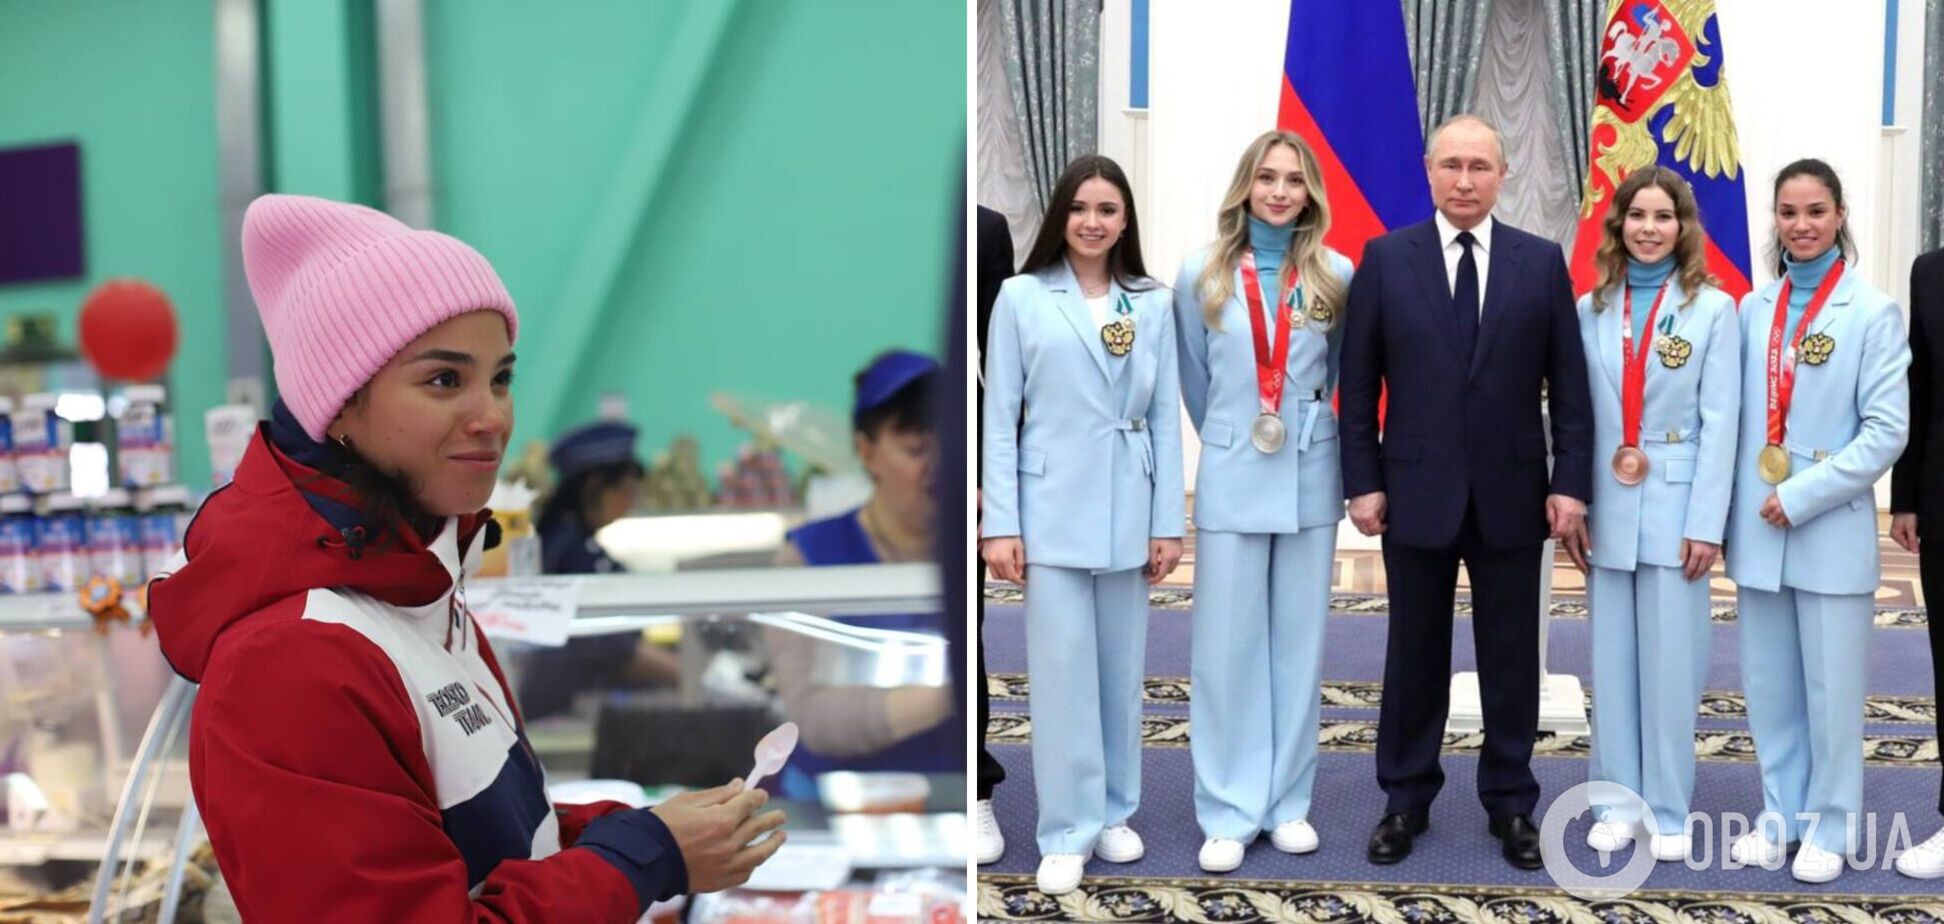 'Переможемо і тут!' Чемпіонка ОІ з РФ 'з інтелектом пралки' розмріялася про повернення Росії у спорт у 'гідному статусі'